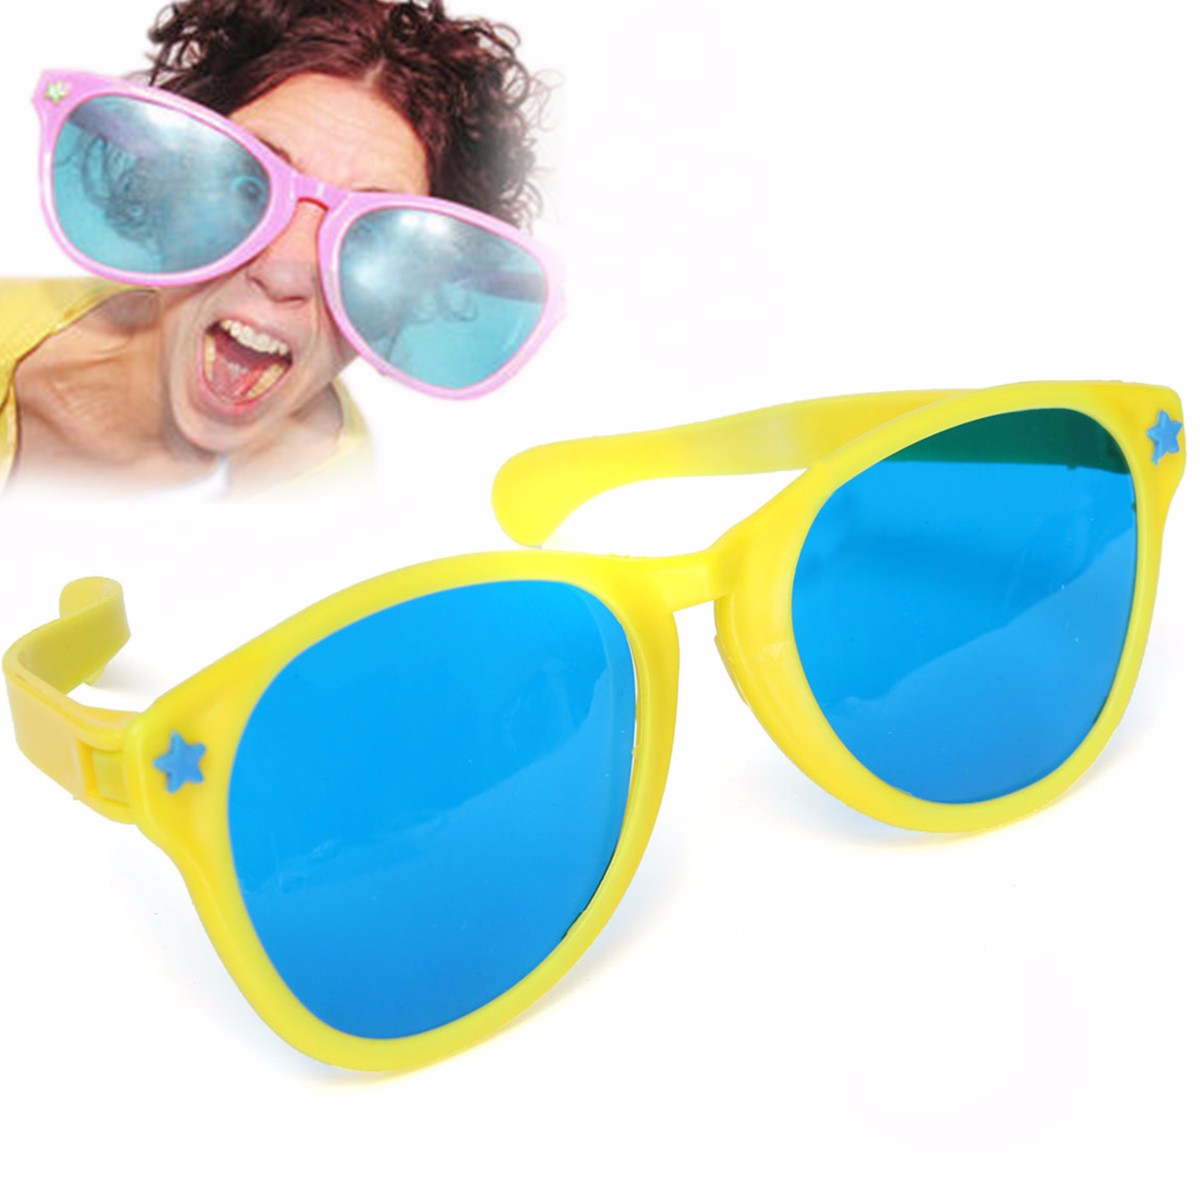 

Large Coloured Comedy Funny Joke Glasses Sunglasses For Clown Gag Fancy Dress